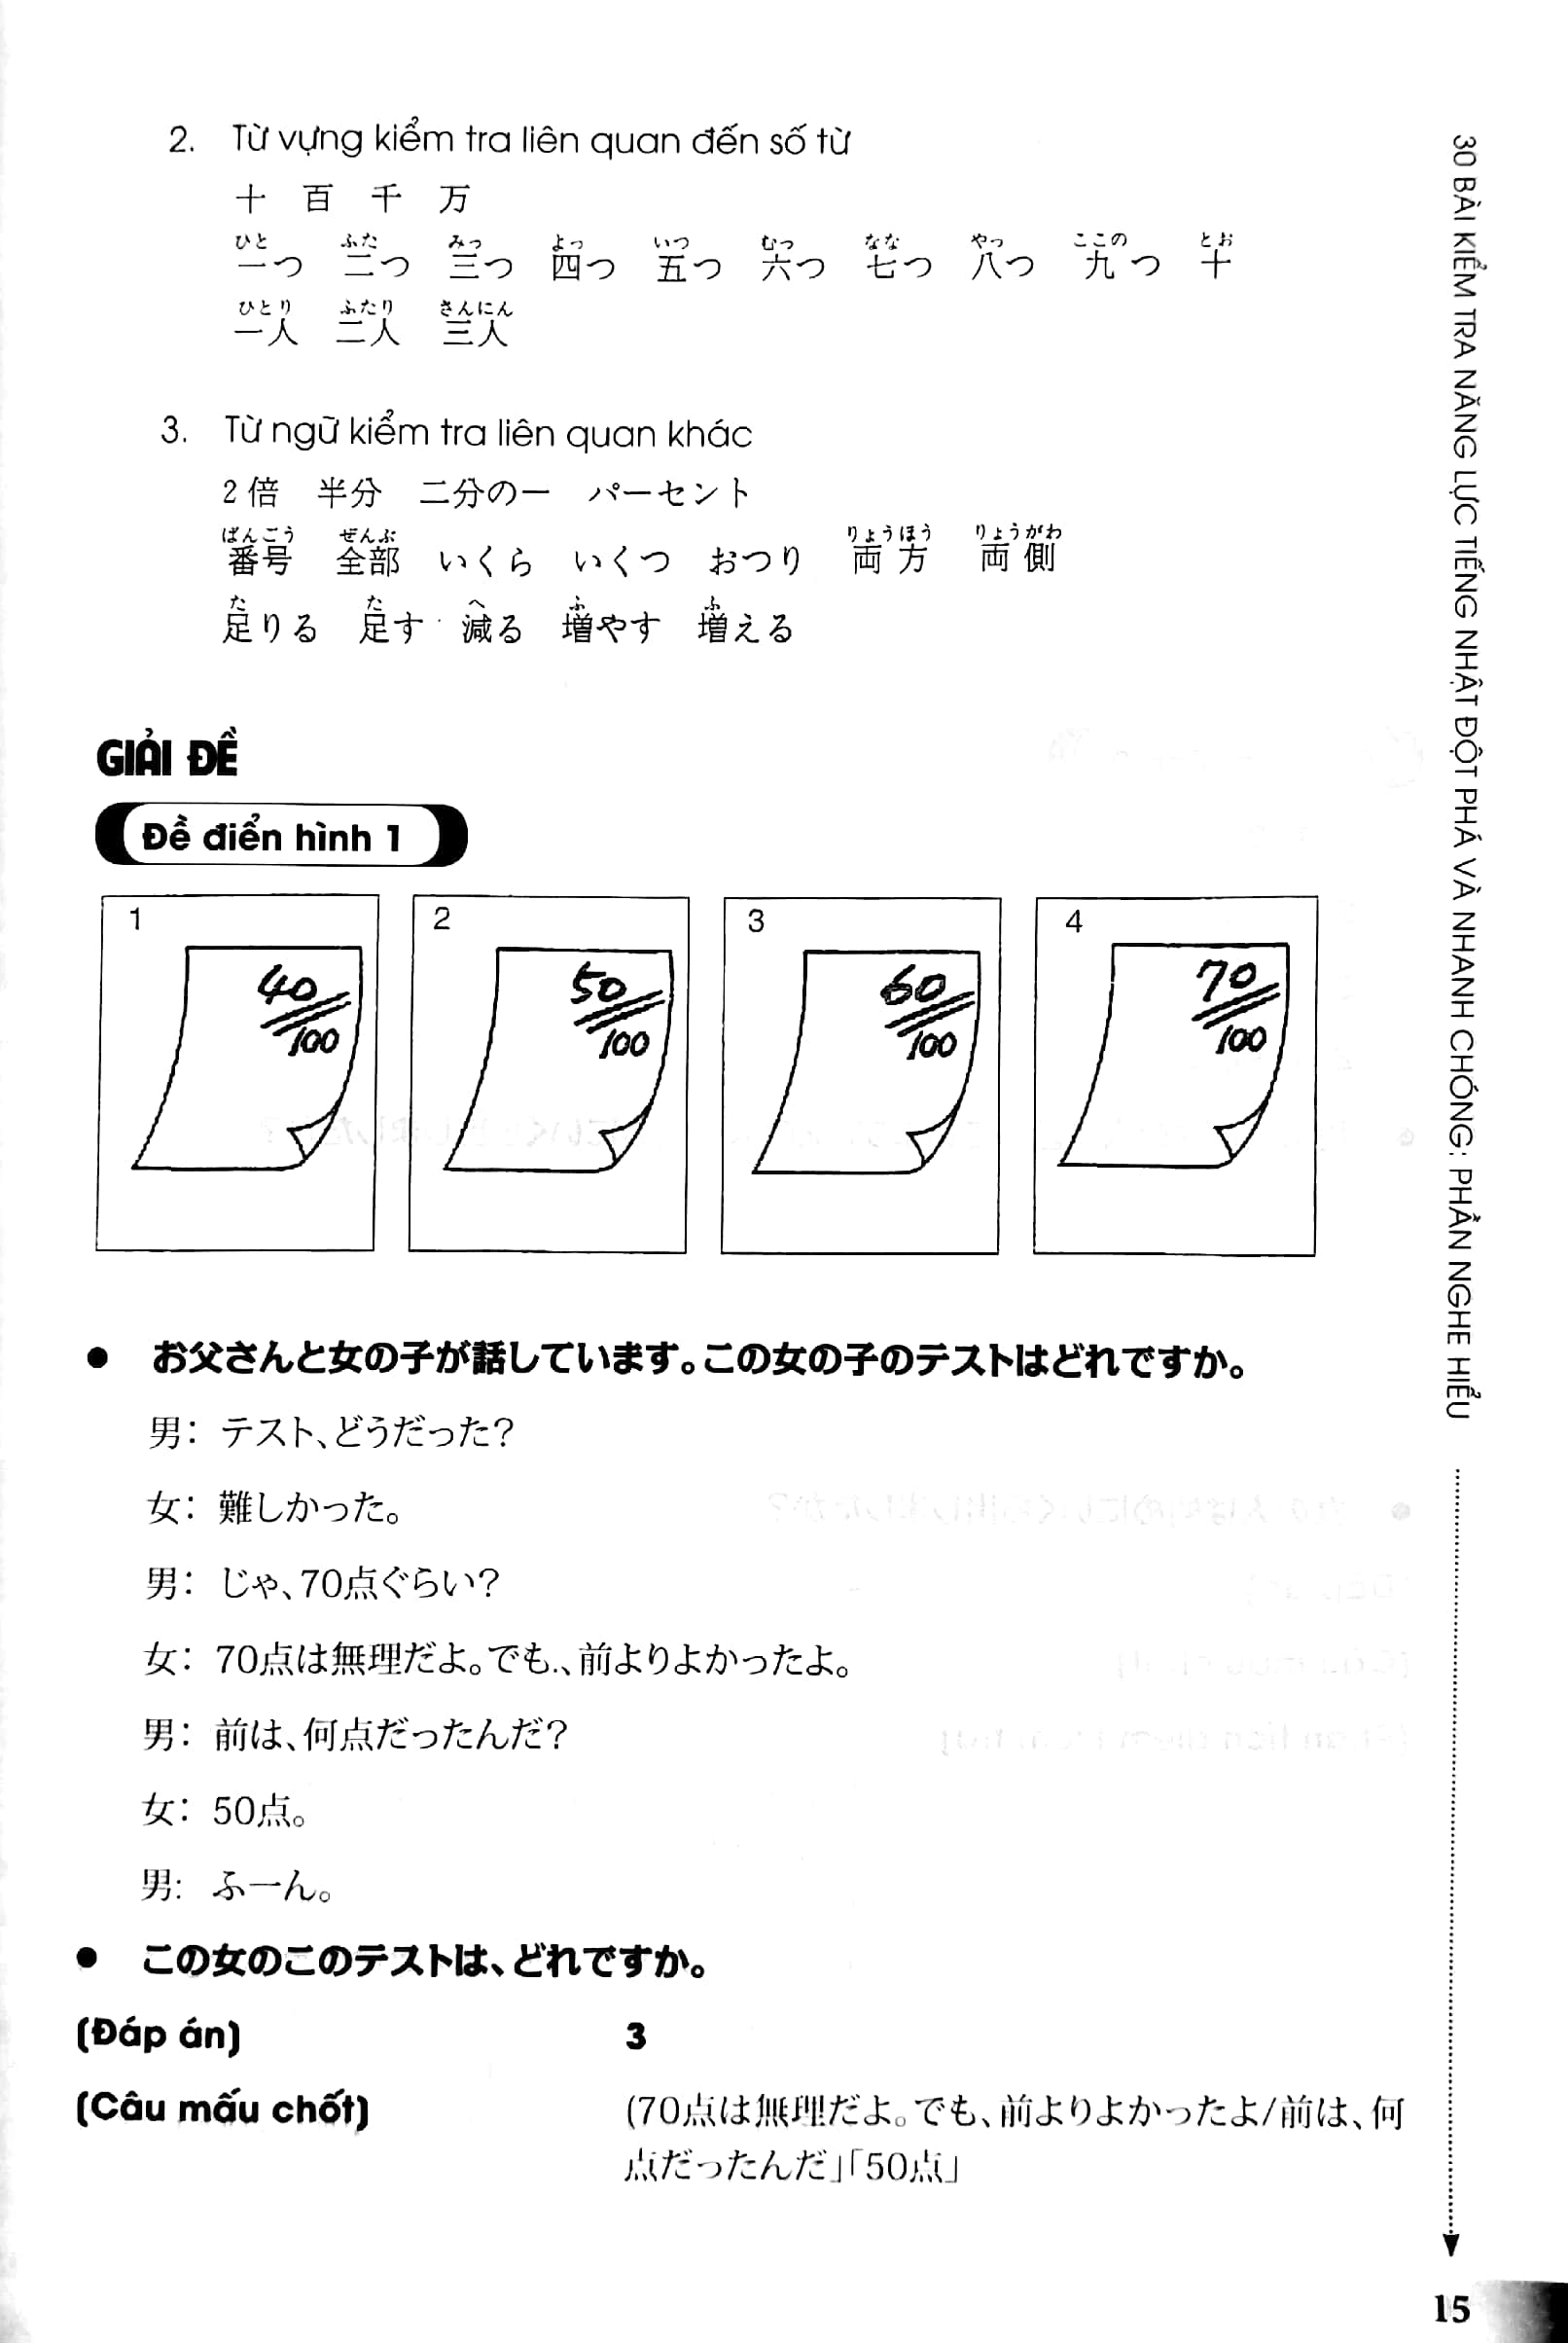 30 Bài Kiểm Tra Năng Lực Tiếng Nhật Đột Phá Và Nhanh Chóng - Phần Nghe Hiểu Trắc Nghiệm  Kèm Cd PDF